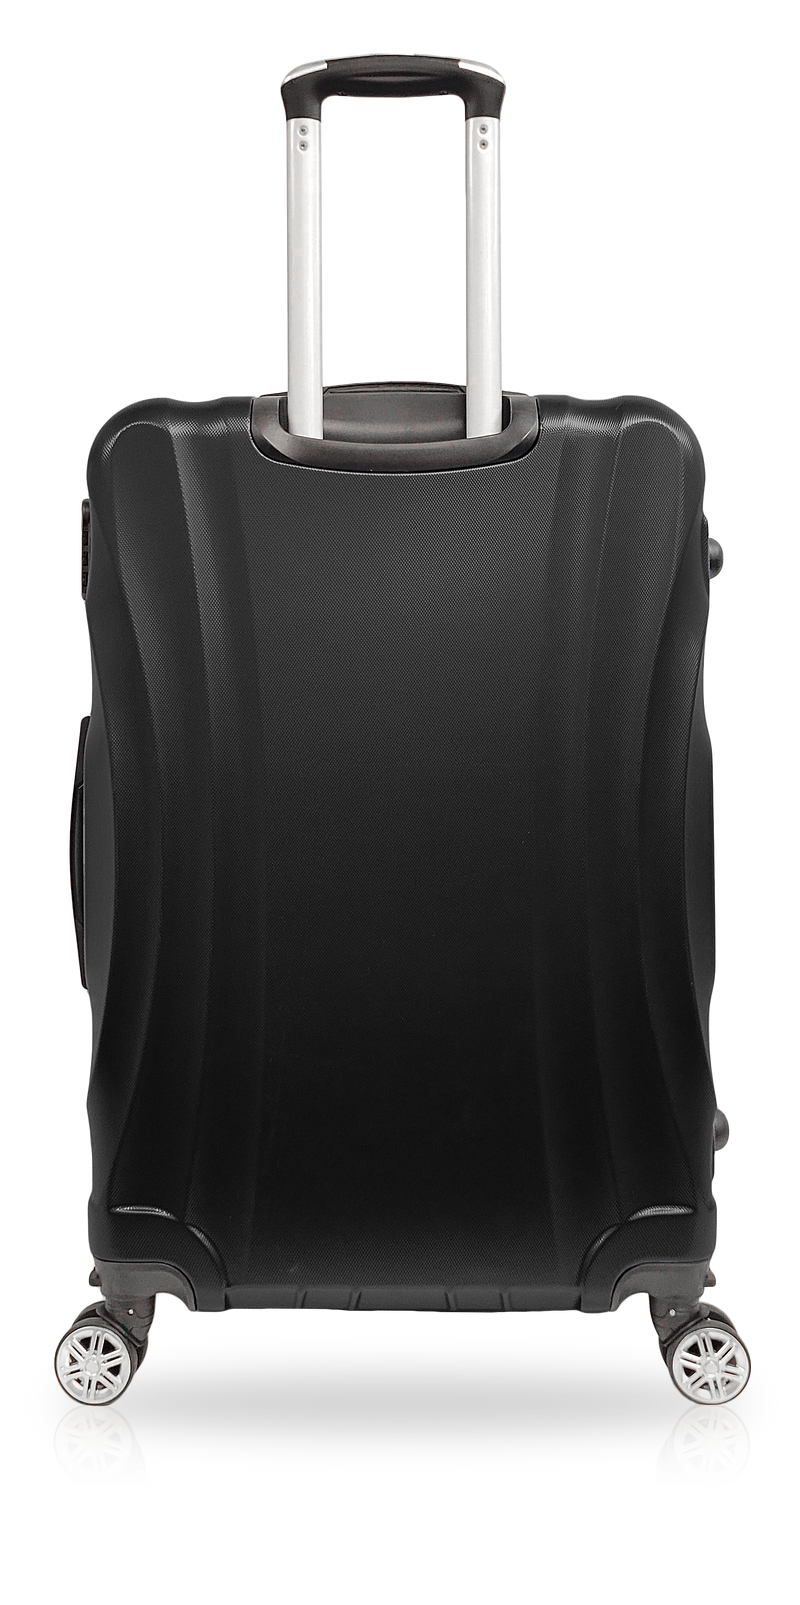 TOSCANO Maestoso 3PC (20", 28", 32") Lightweight Luggage Suitcase